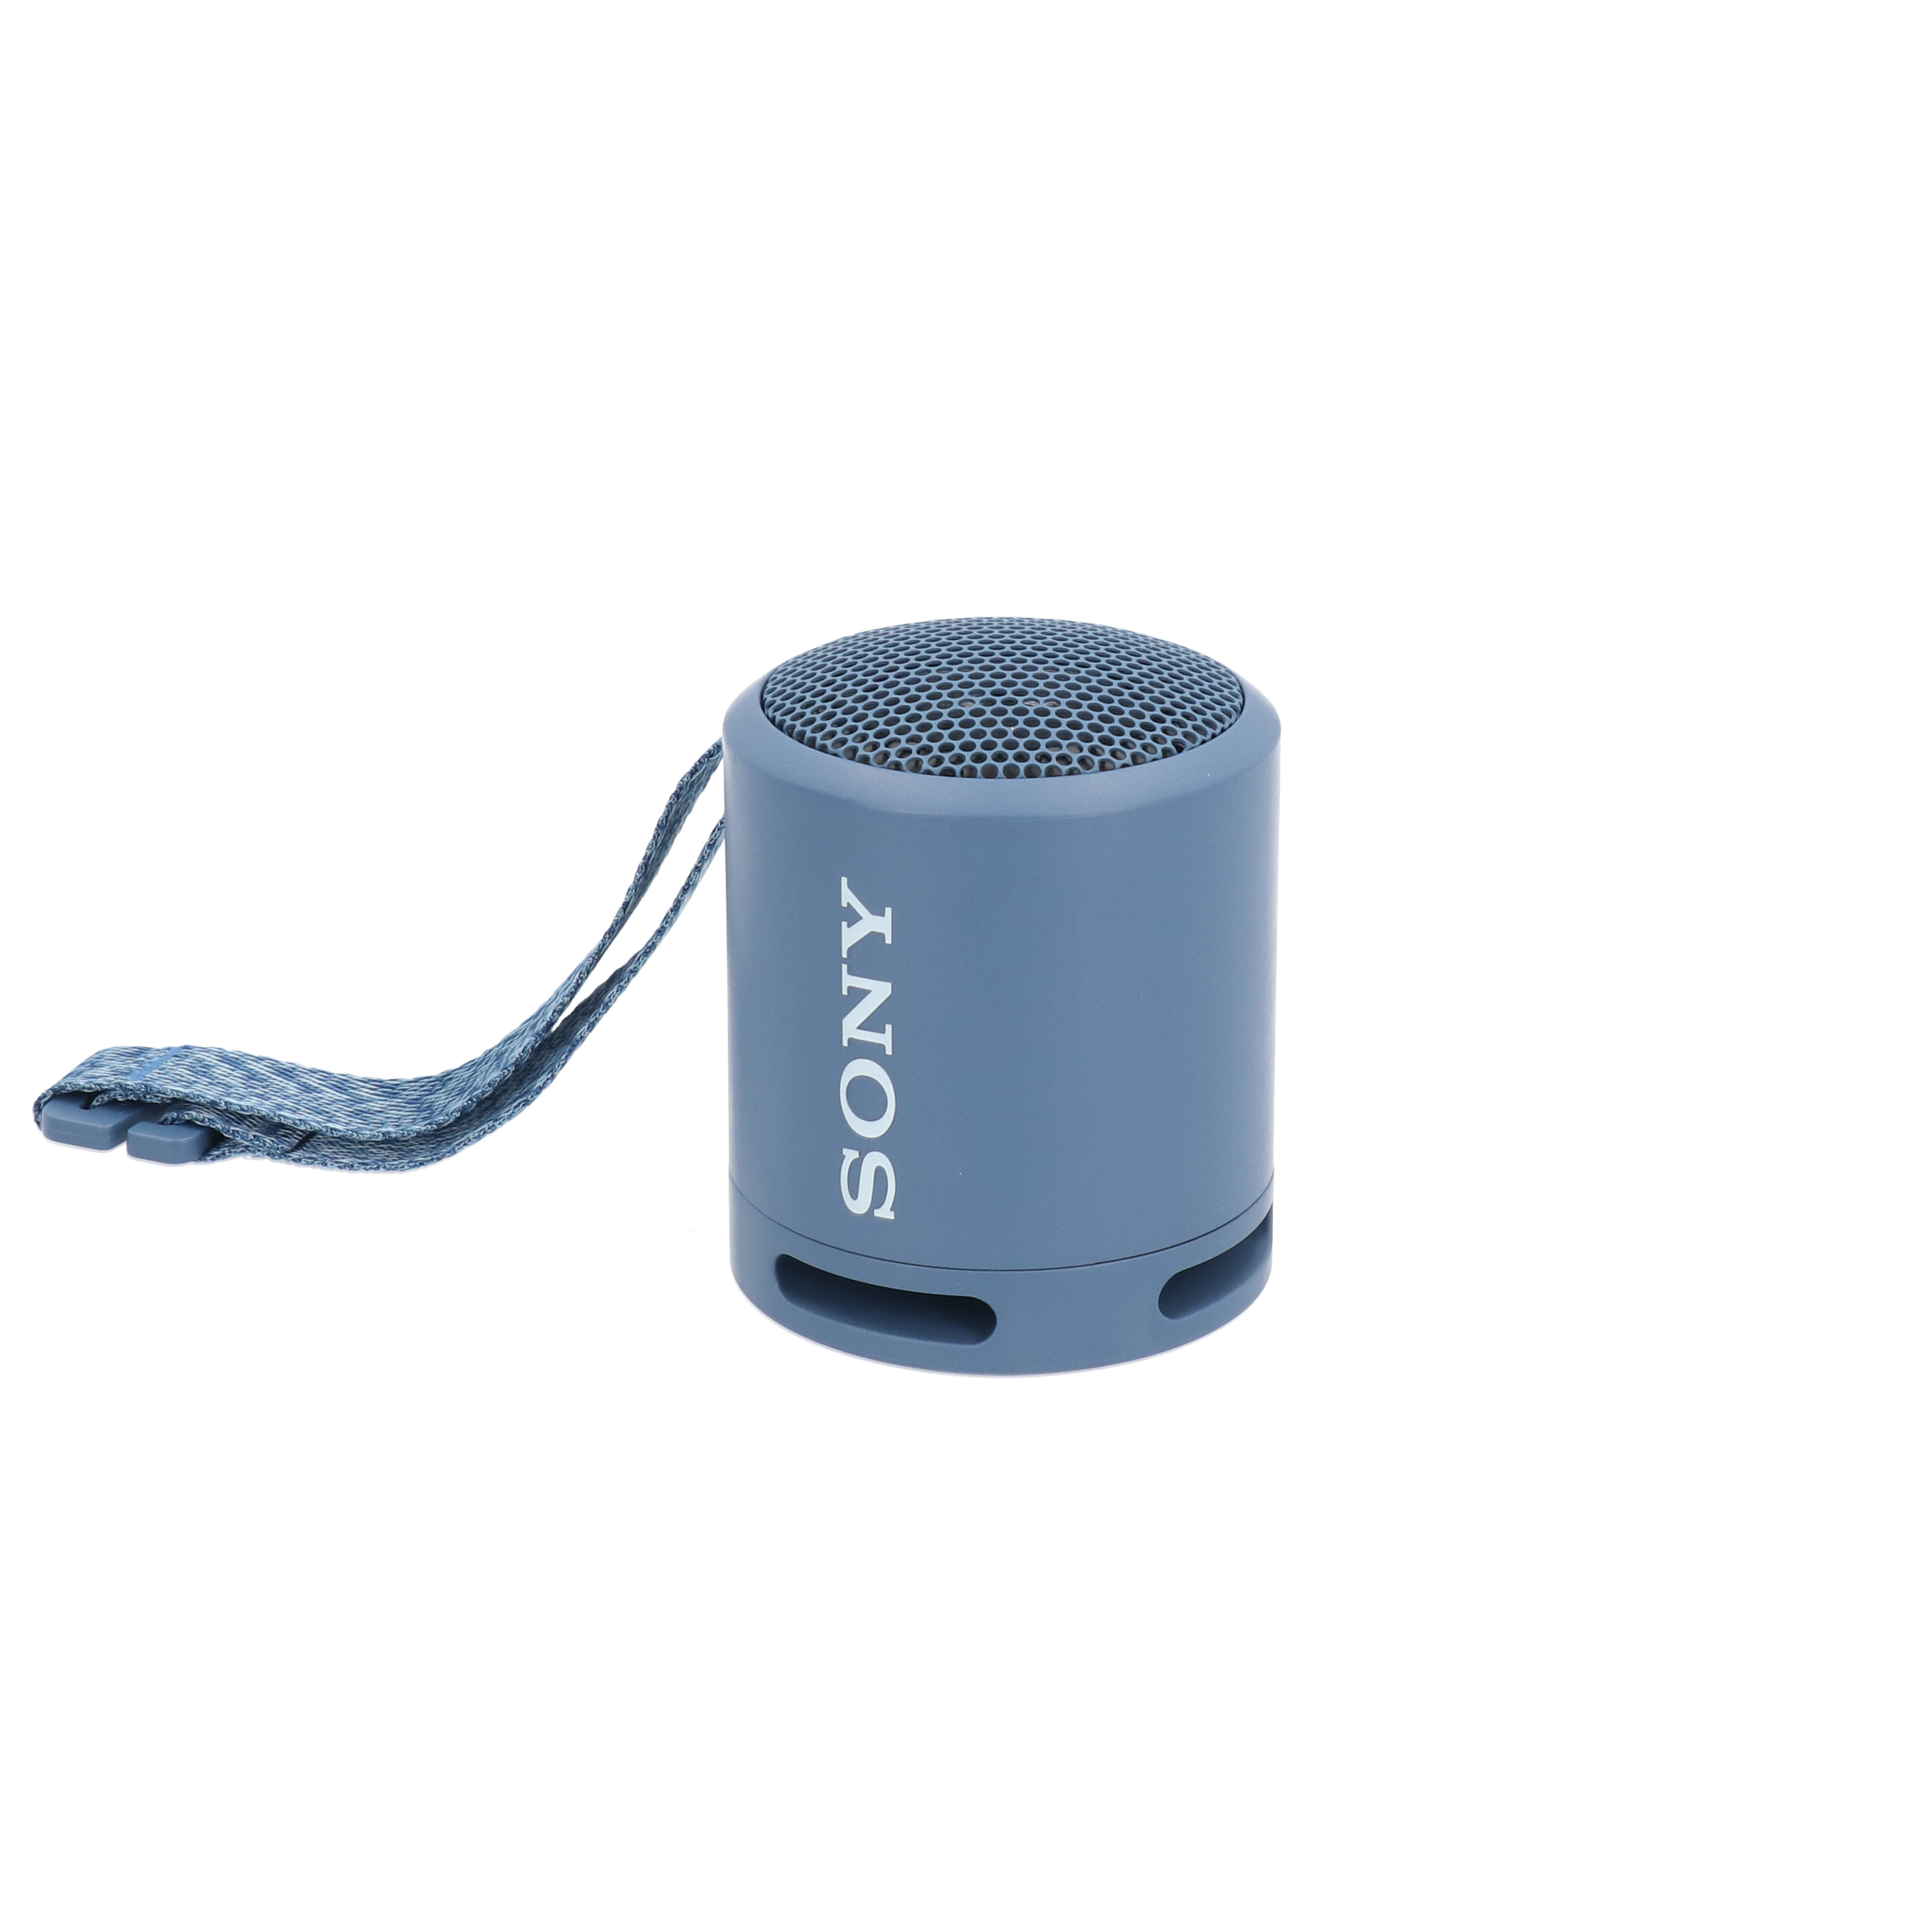 ソニー ワイヤレスポータブルスピーカー SRS-XB12 防水   防塵   Bluetooth対応   重低音モデル   マイク付き  軽量 コ - 1